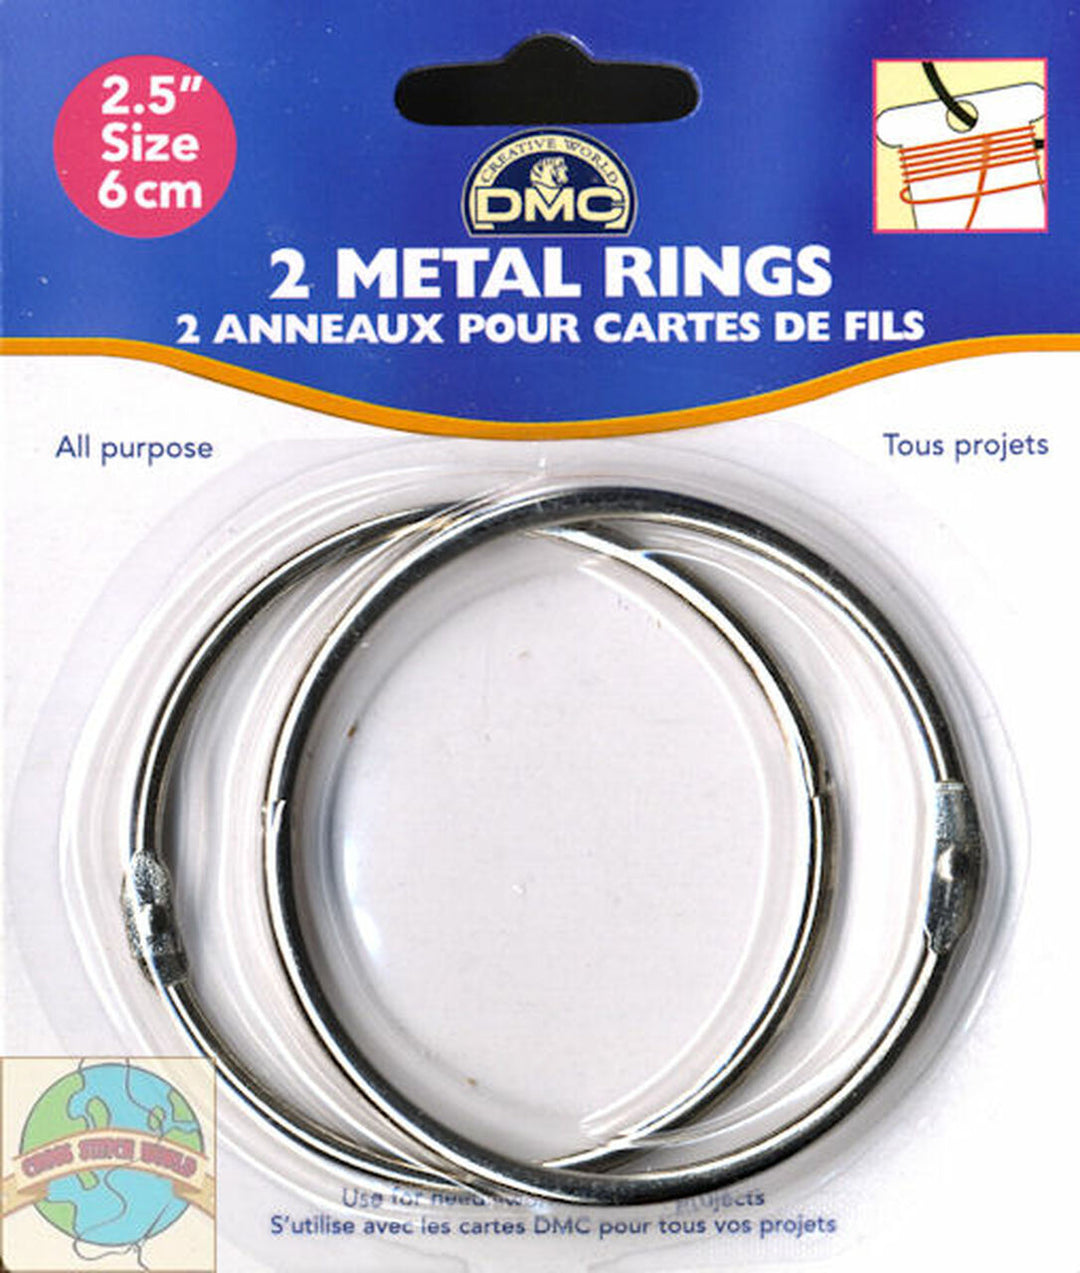 DMC 2.5" Metal Craft Rings